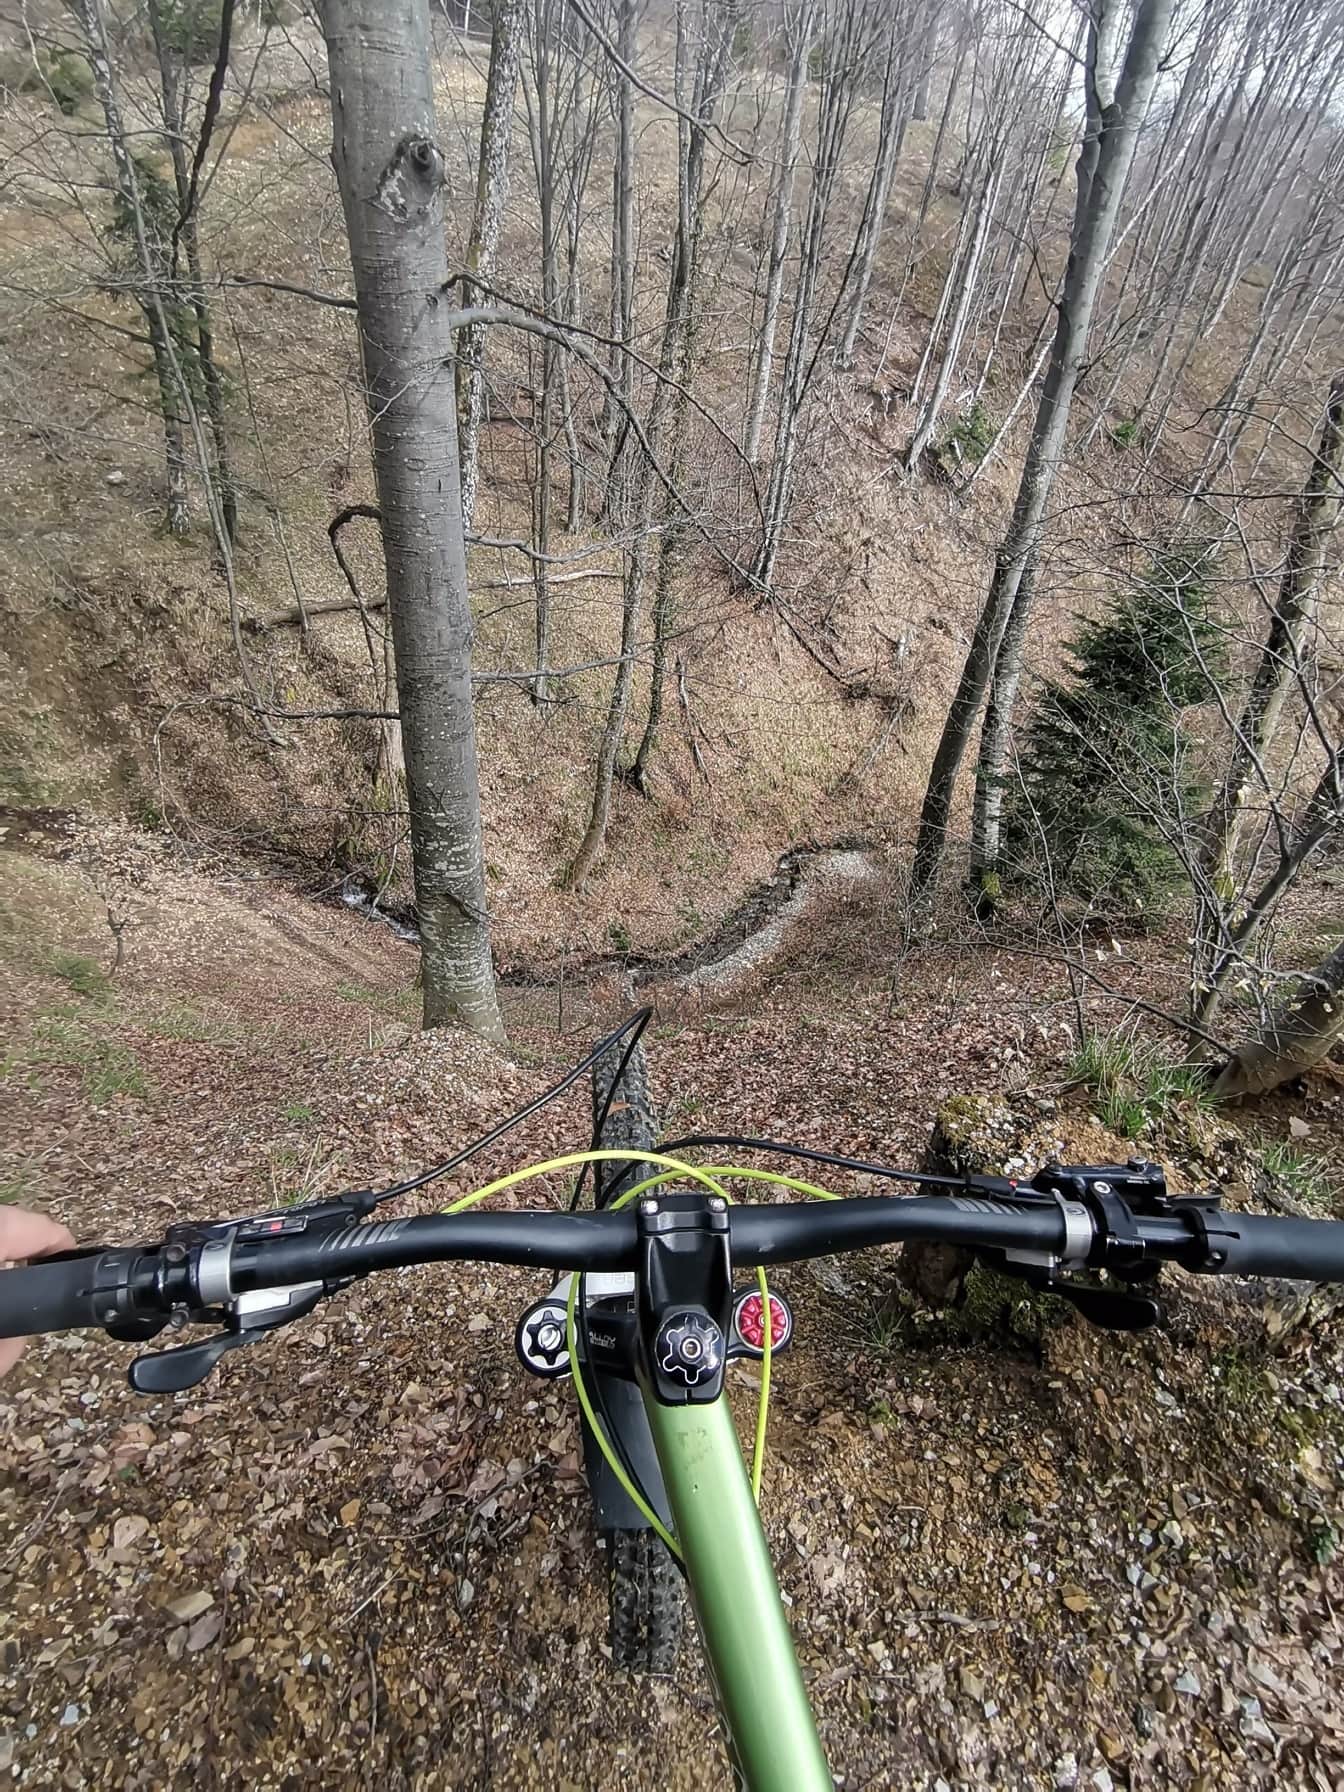 ขับจักรยานเสือภูเขาบนยอดเขาในป่า